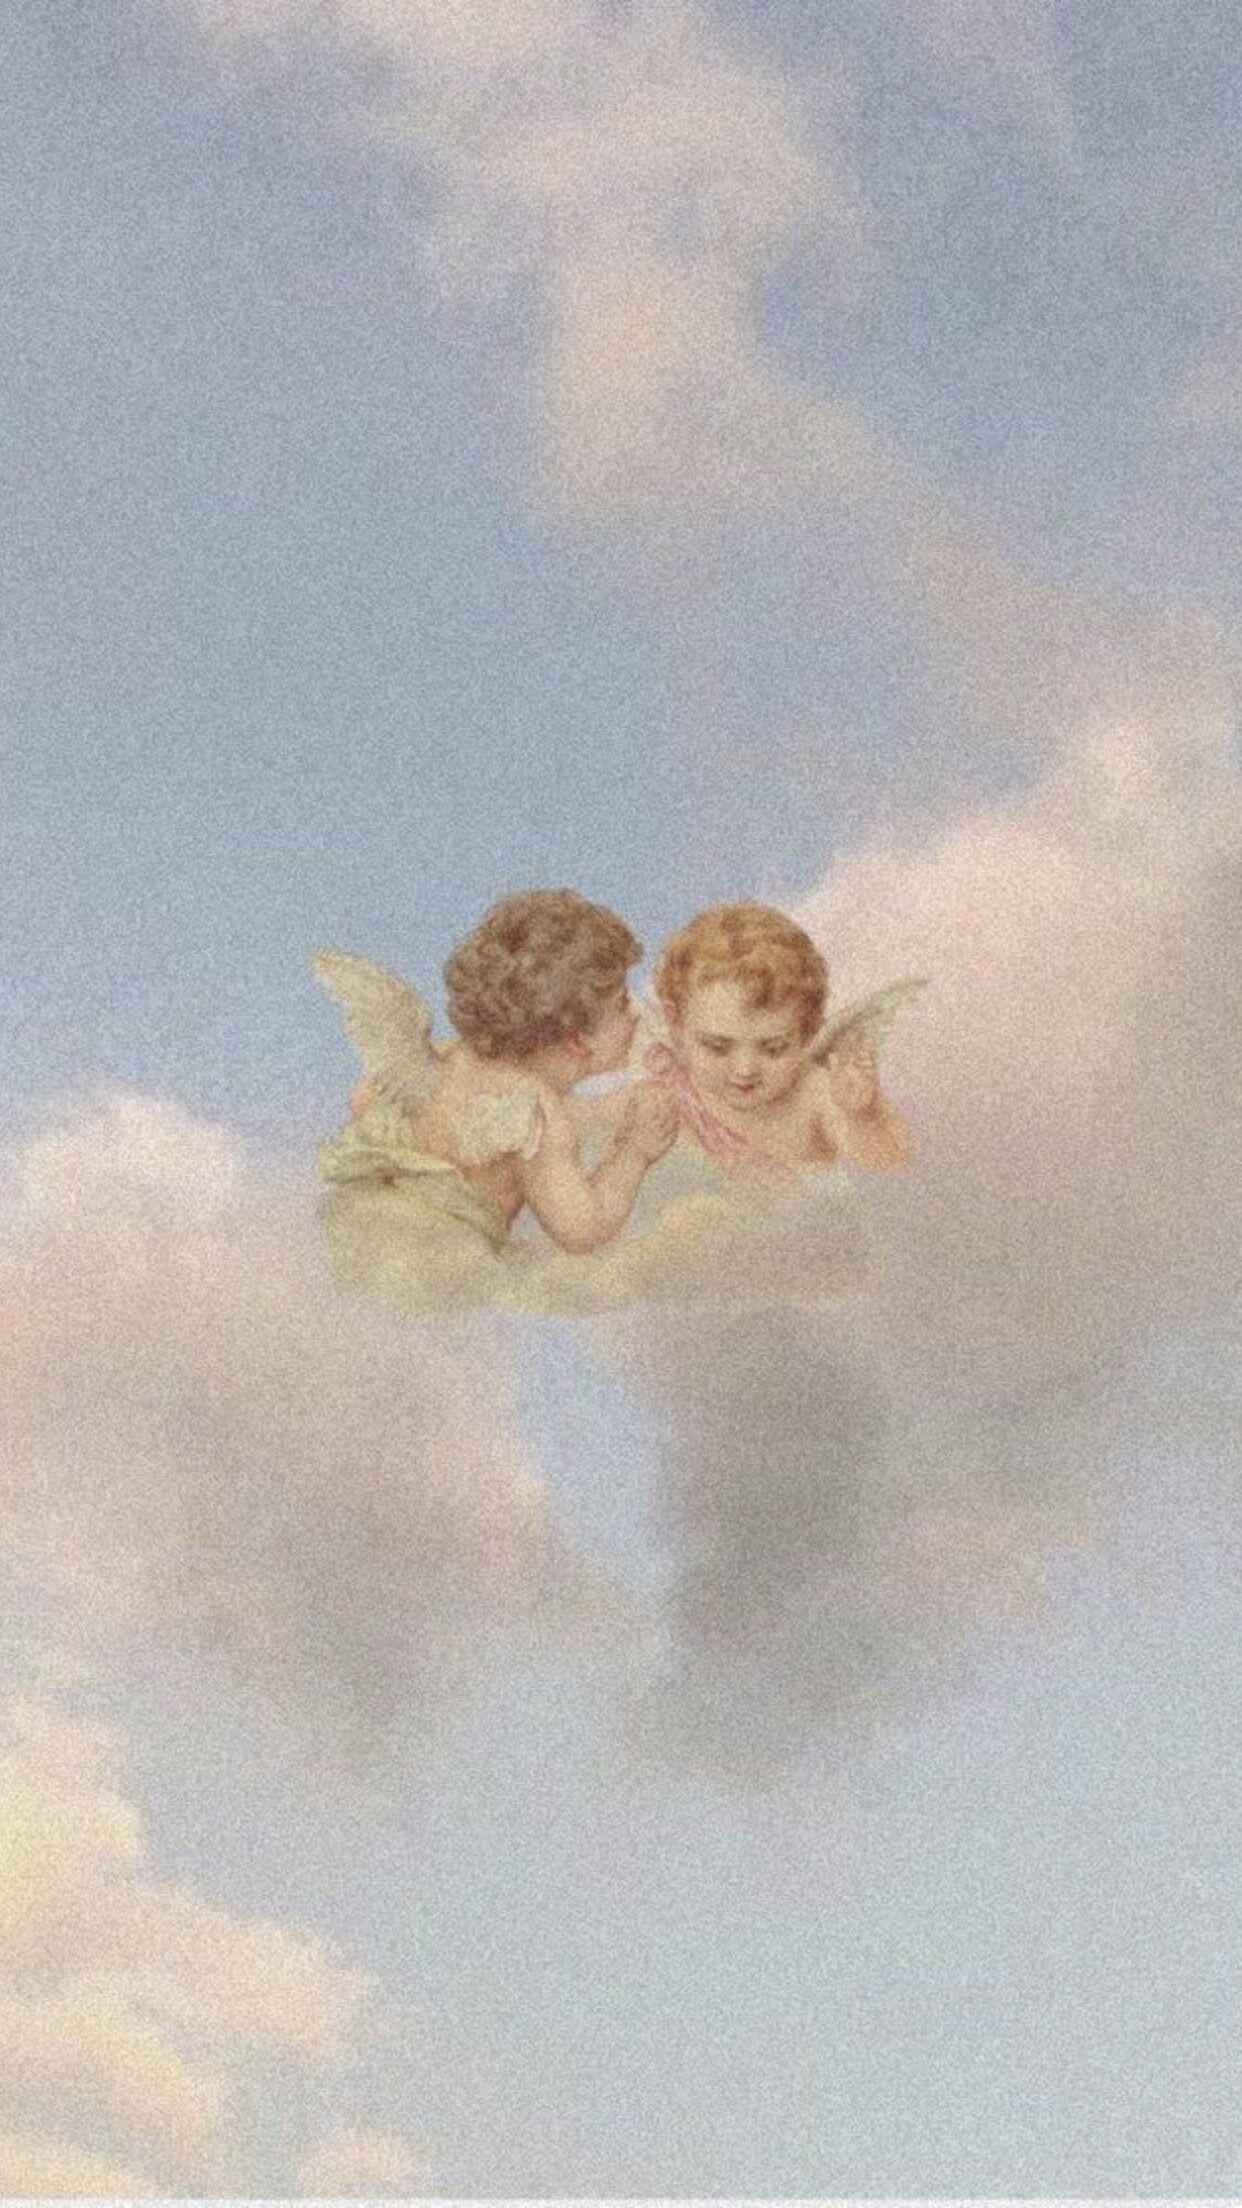  Umarmung Hintergrundbild 1242x2208. Нурхан Торобекоаа on обои. Angel wallpaper, Angel aesthetic, Aesthetic wallpaper